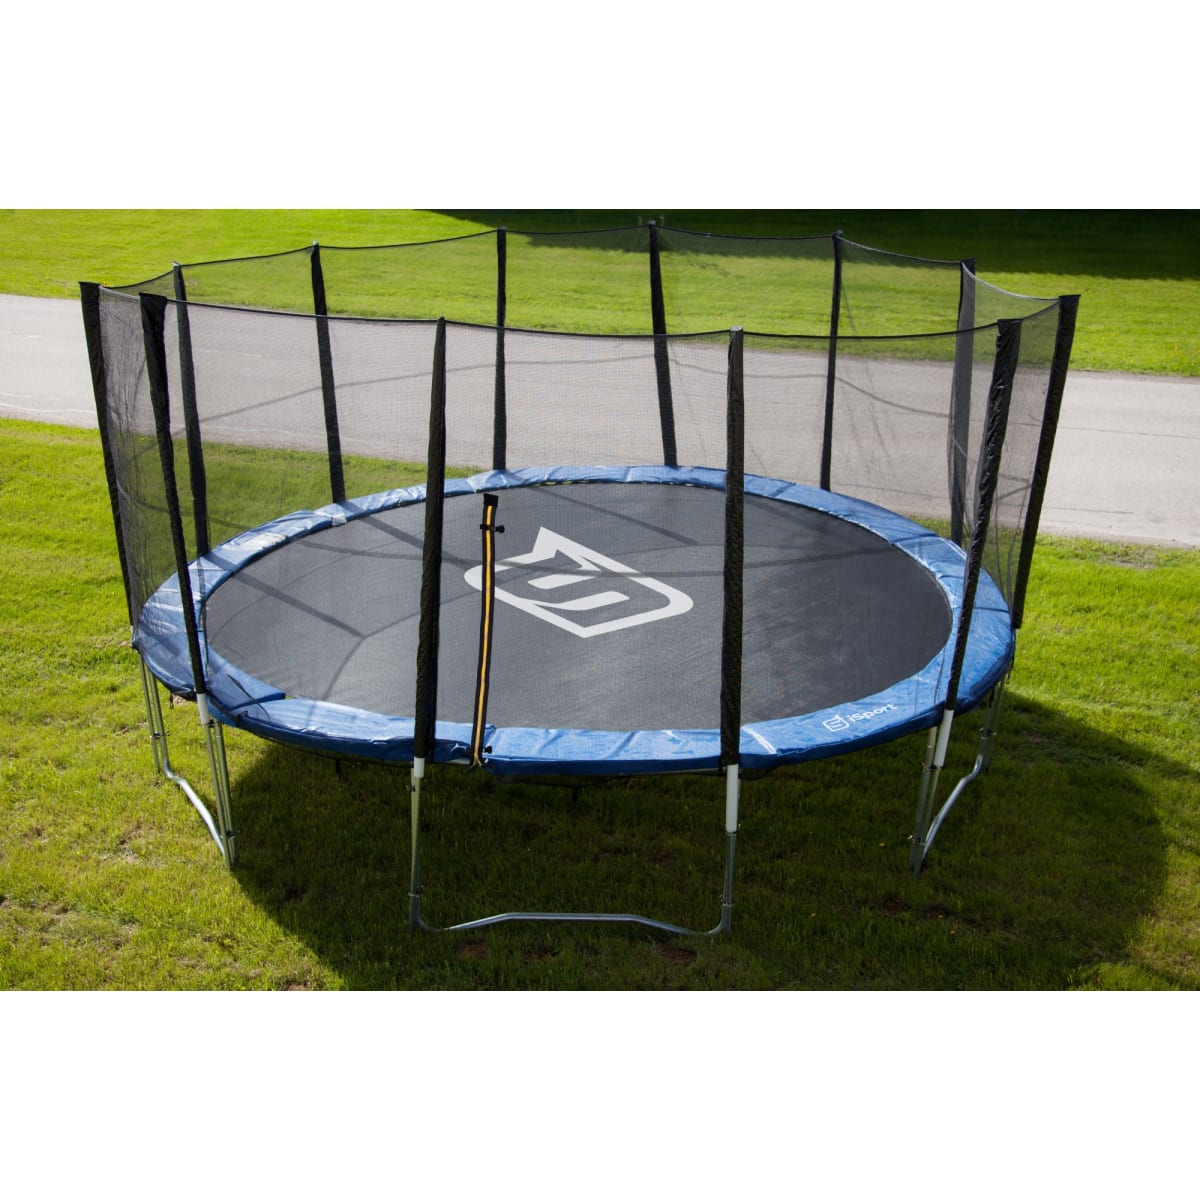 iSport 4,3 m trampoliiniin turvaverkko (ilman tolppia)   verkkokauppa